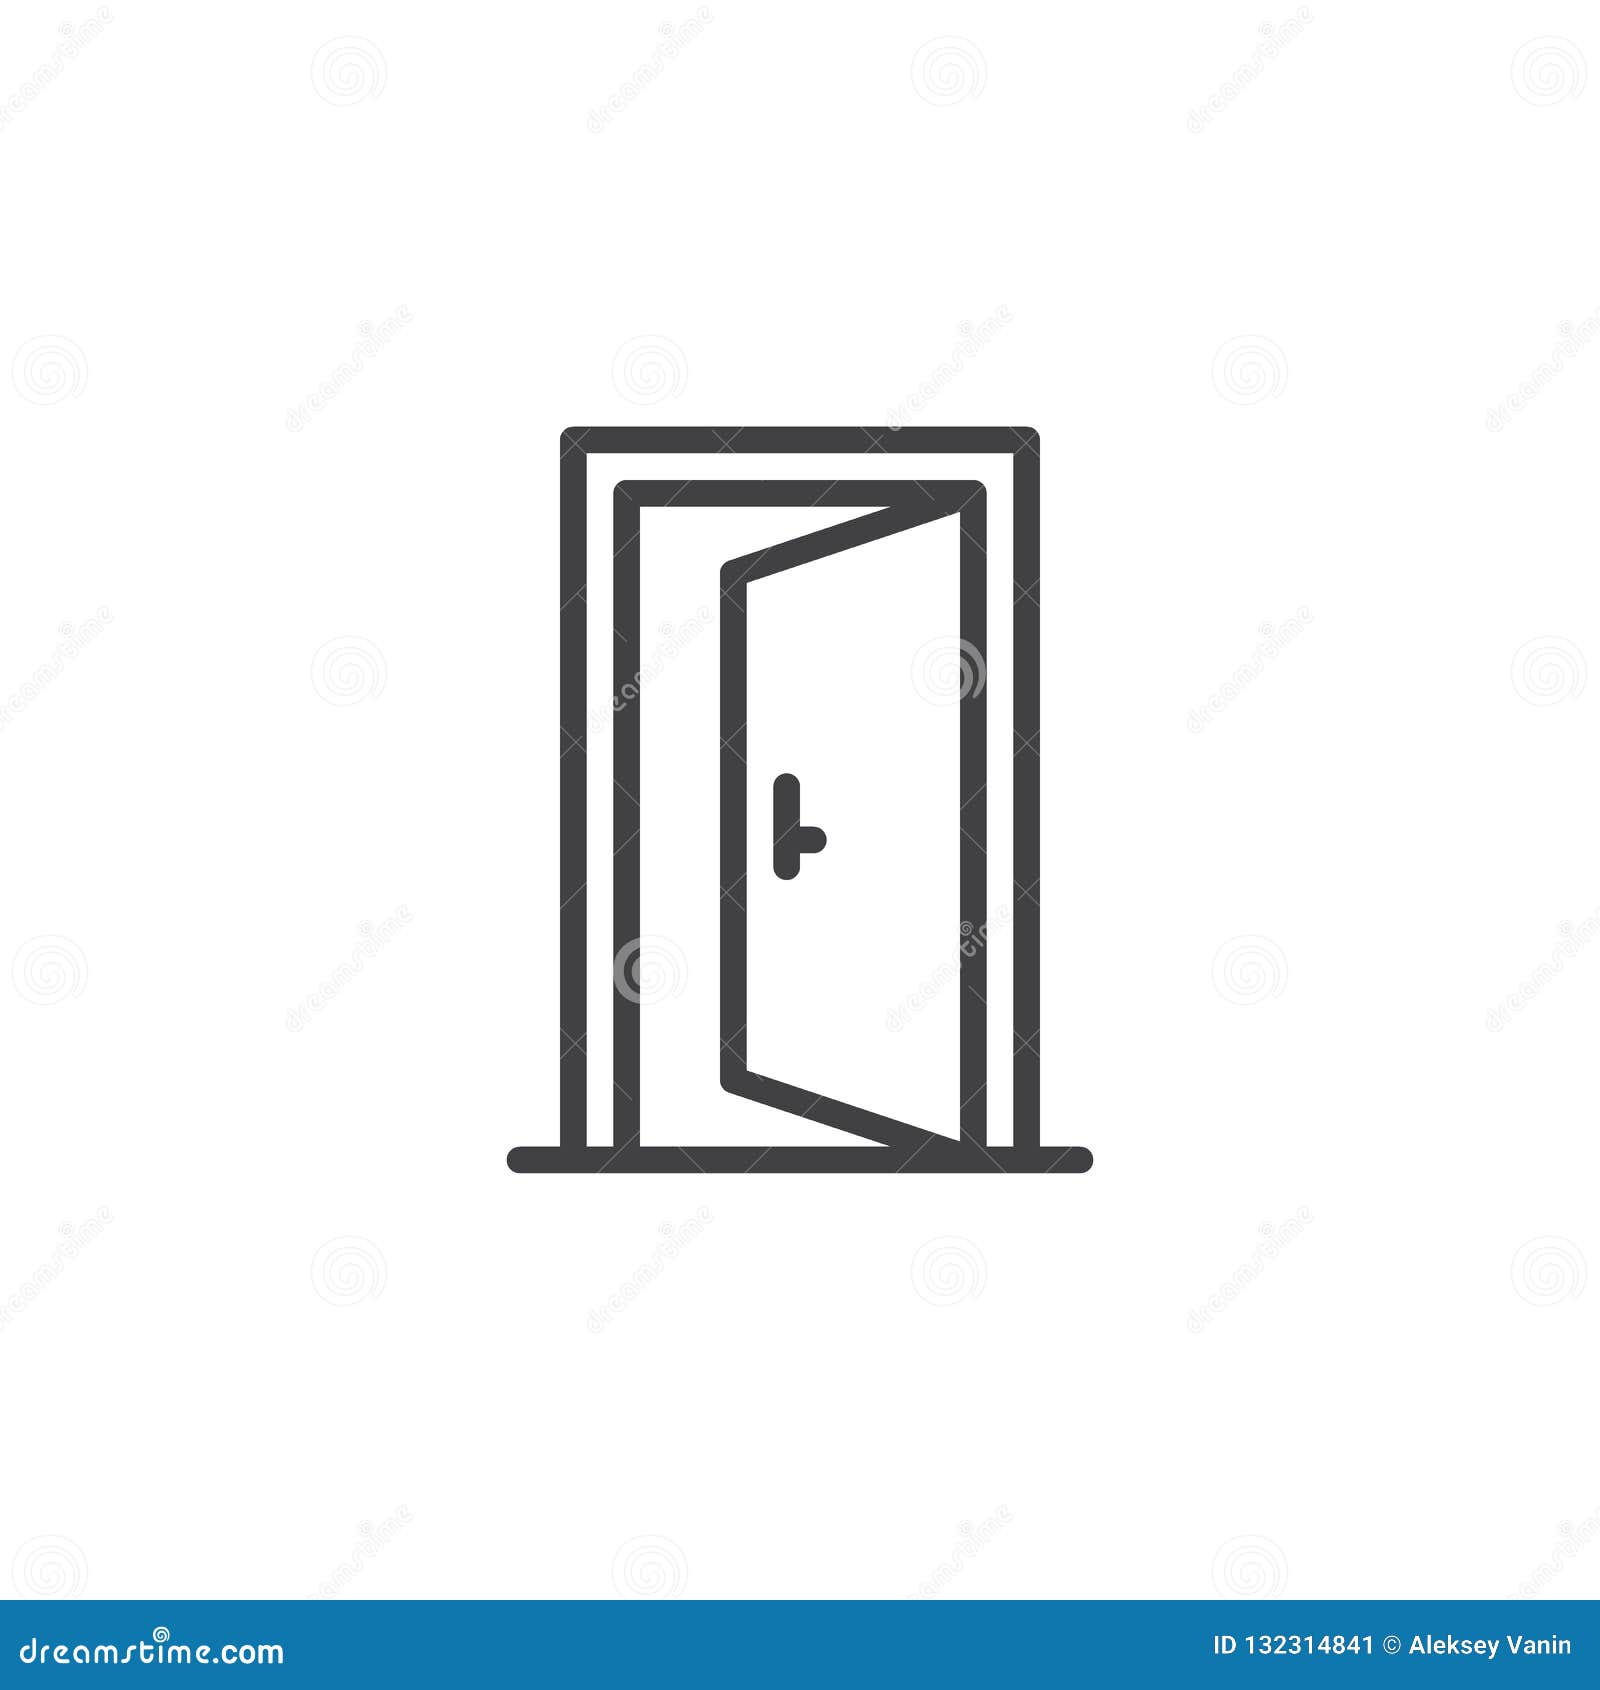 Открытая дверь символ. Контур открытой двери. Дверь символ. Иконка двери для планировки. Открытая дверь иконка.